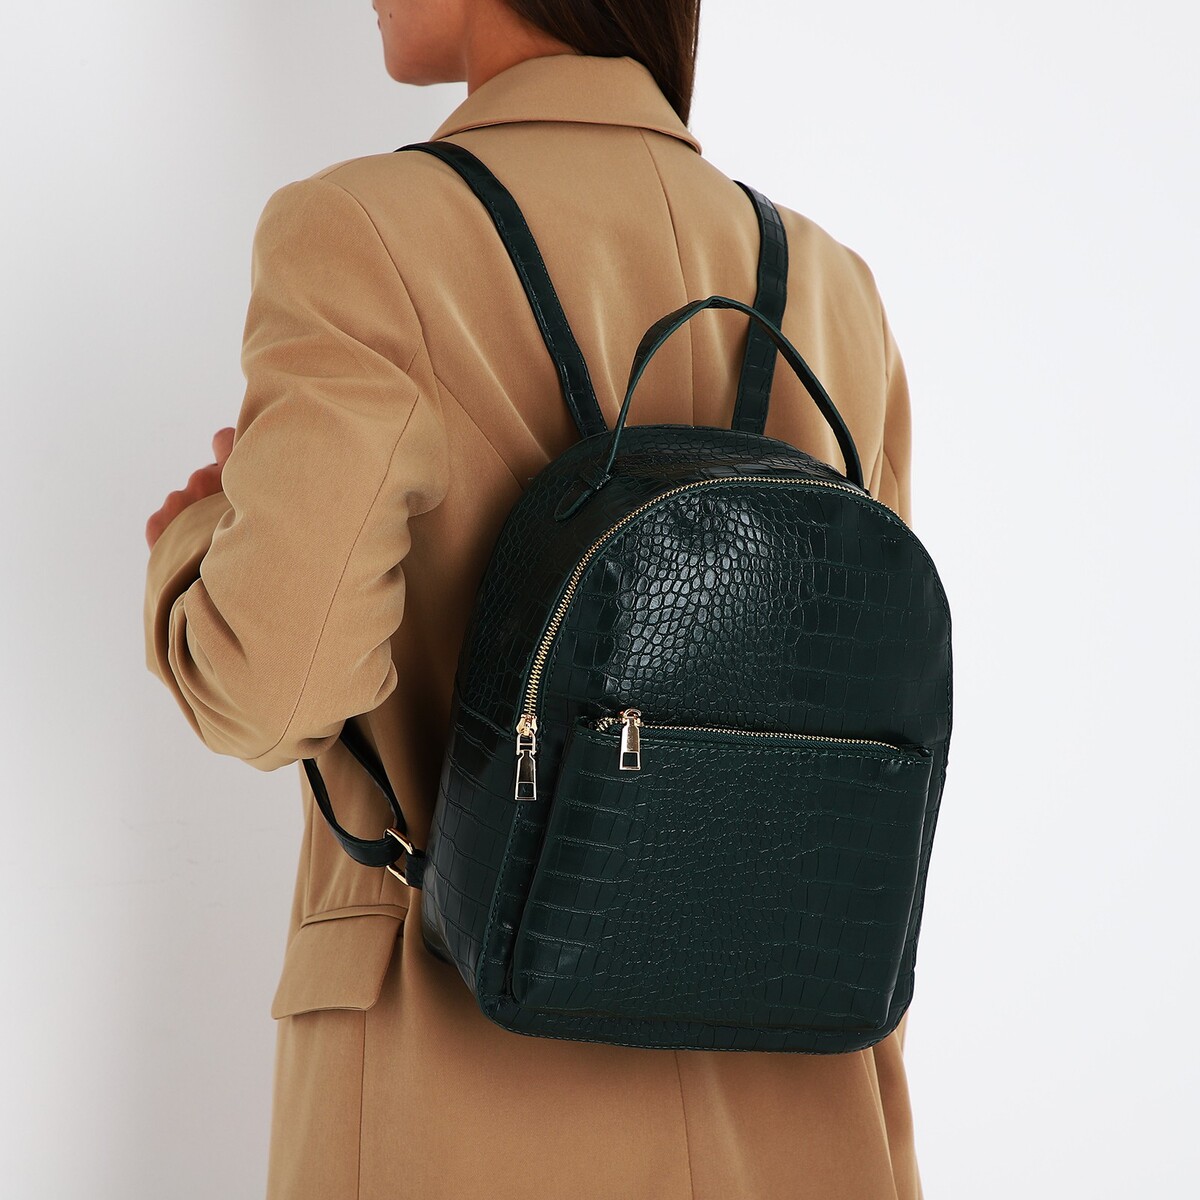 Рюкзак женский из искусственной кожи на молнии, 1 карман, цвет зеленый рюкзак текстильный 46х30х10 см вертикальный карман зеленый